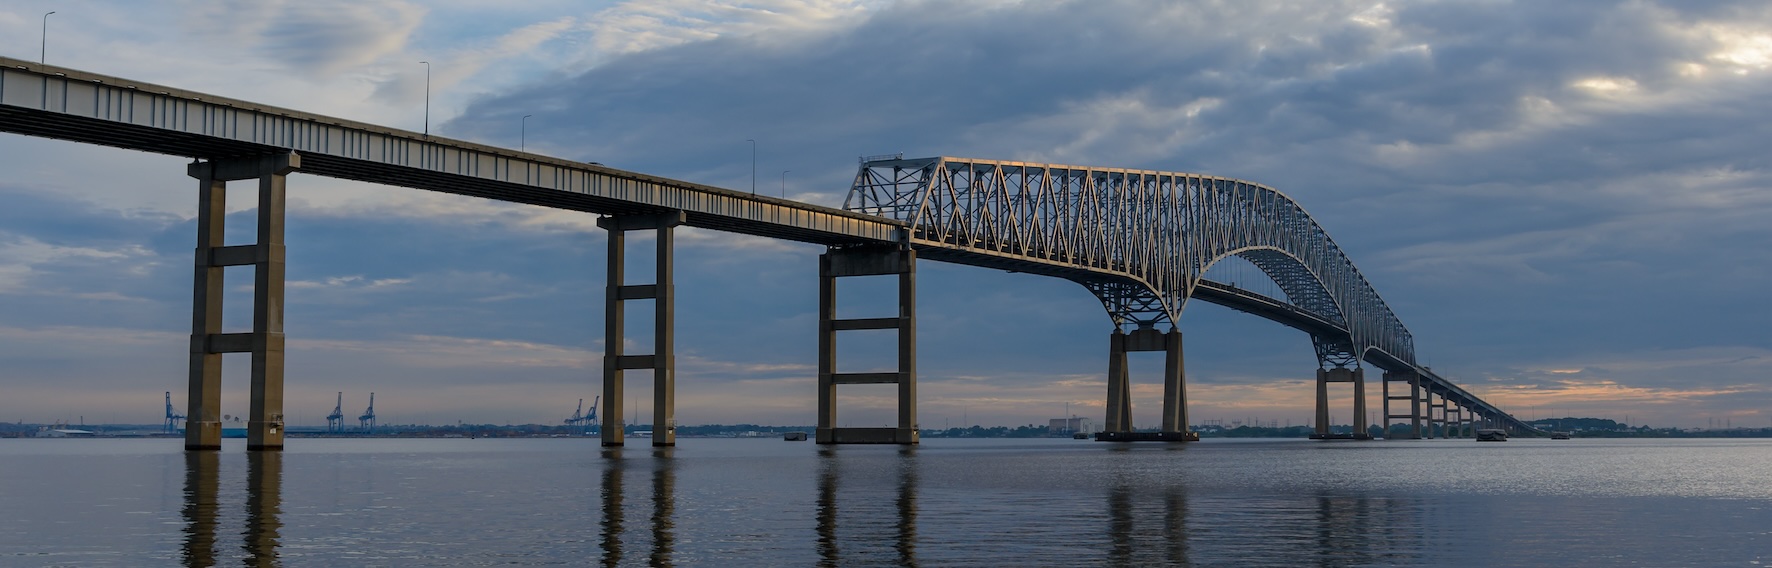 Összeomlott egy négysávos folyami híd Baltimore-nál